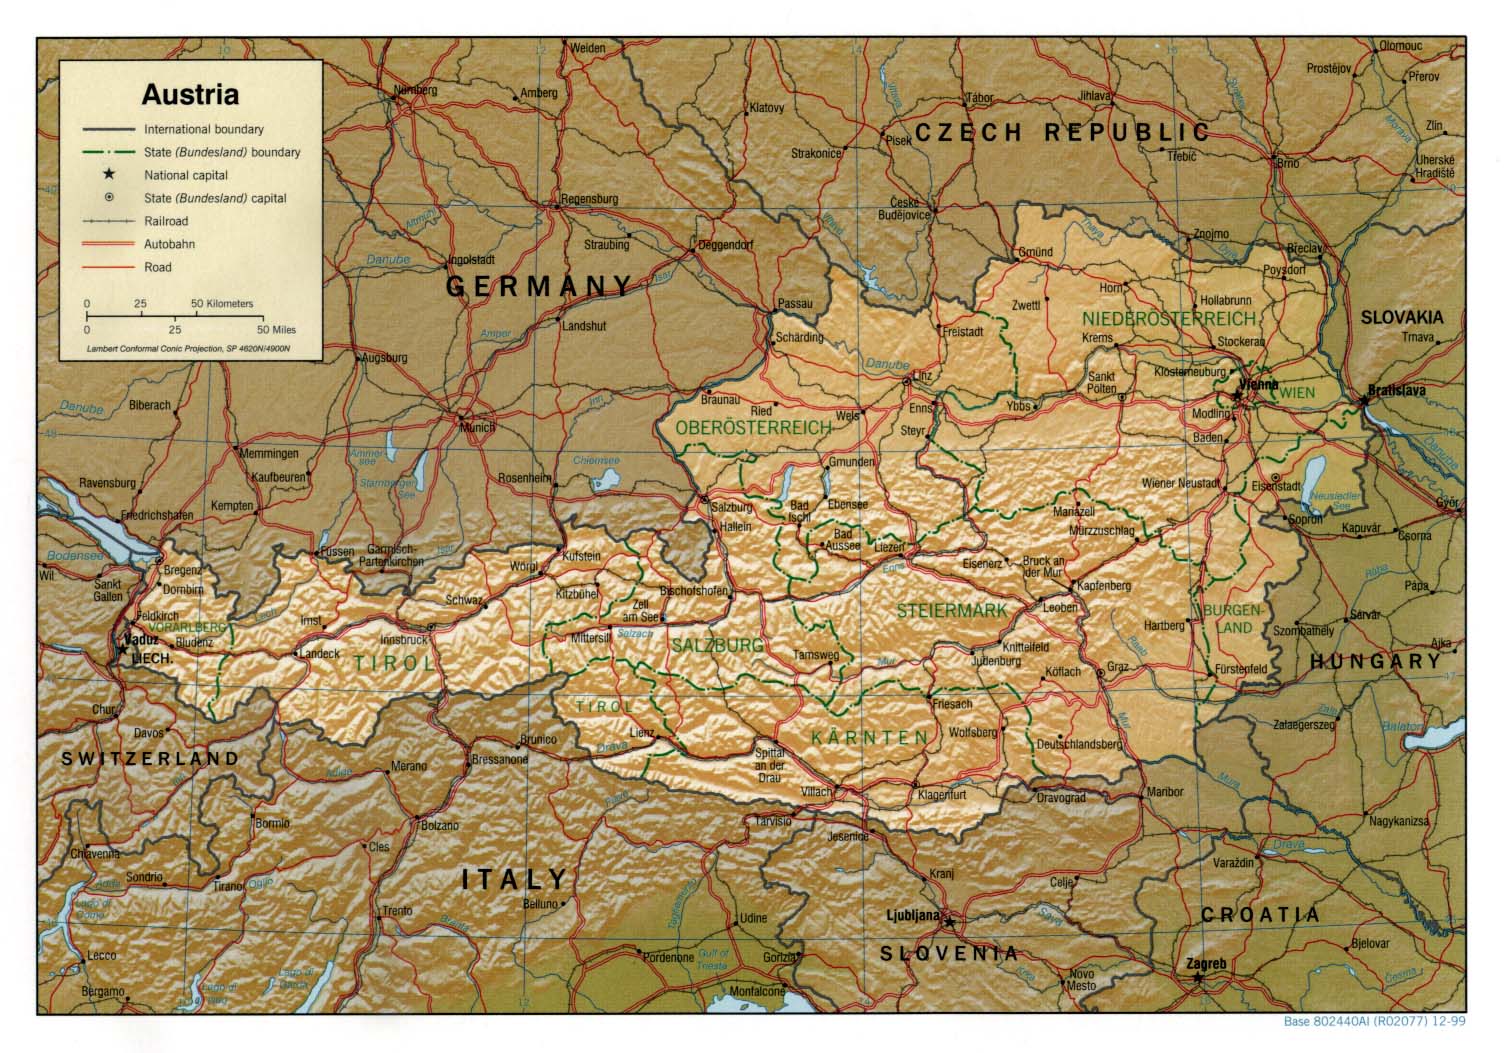 online térkép ausztria Ausztria térkép lap   Megbízható válaszok profiktól online térkép ausztria